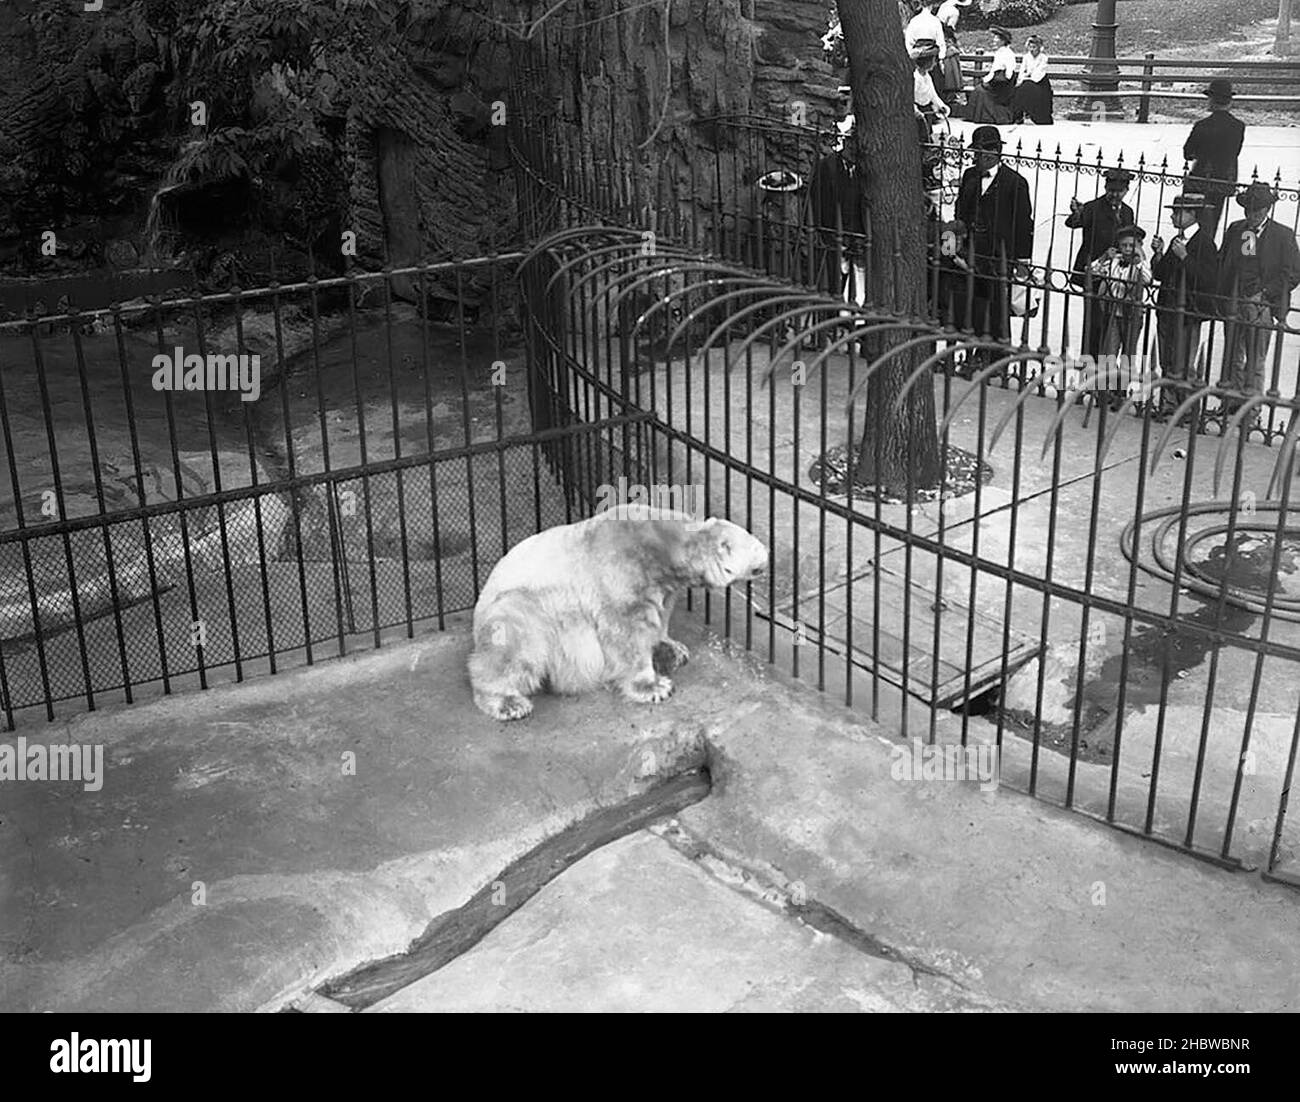 Visiteurs regardant l'ours polaire (Ursus maritimus) marchant le long du plancher de sa cage au zoo de Lincoln Park, vu d'en haut vers.1900 Banque D'Images